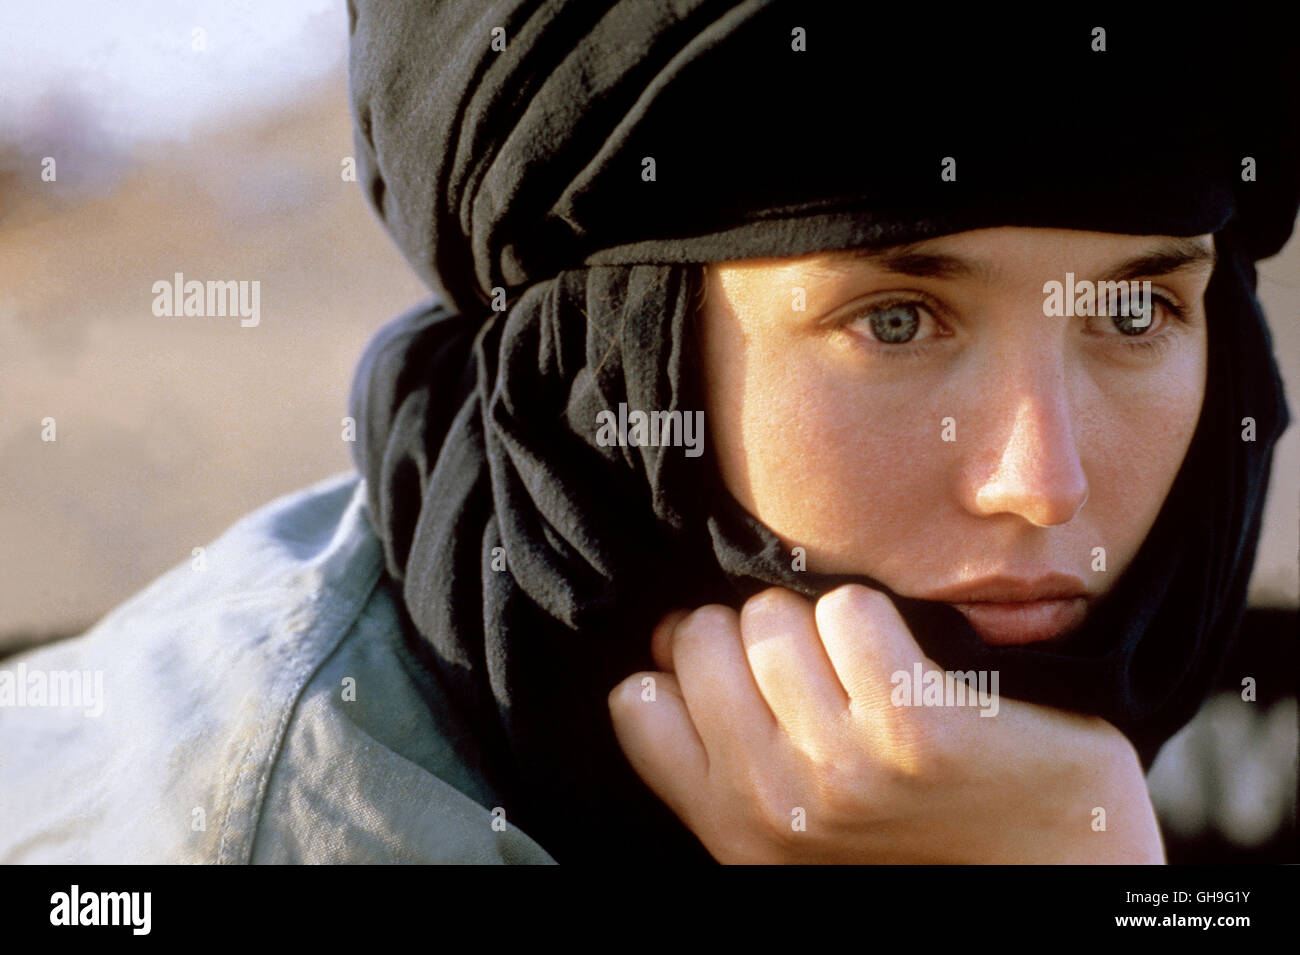 Shirra Revolutionärin (Isabelle ADJANI) Film, Fernsehen, Abenteuerfilm, 80er Regie: Elaine può aka. Ishtar Foto Stock